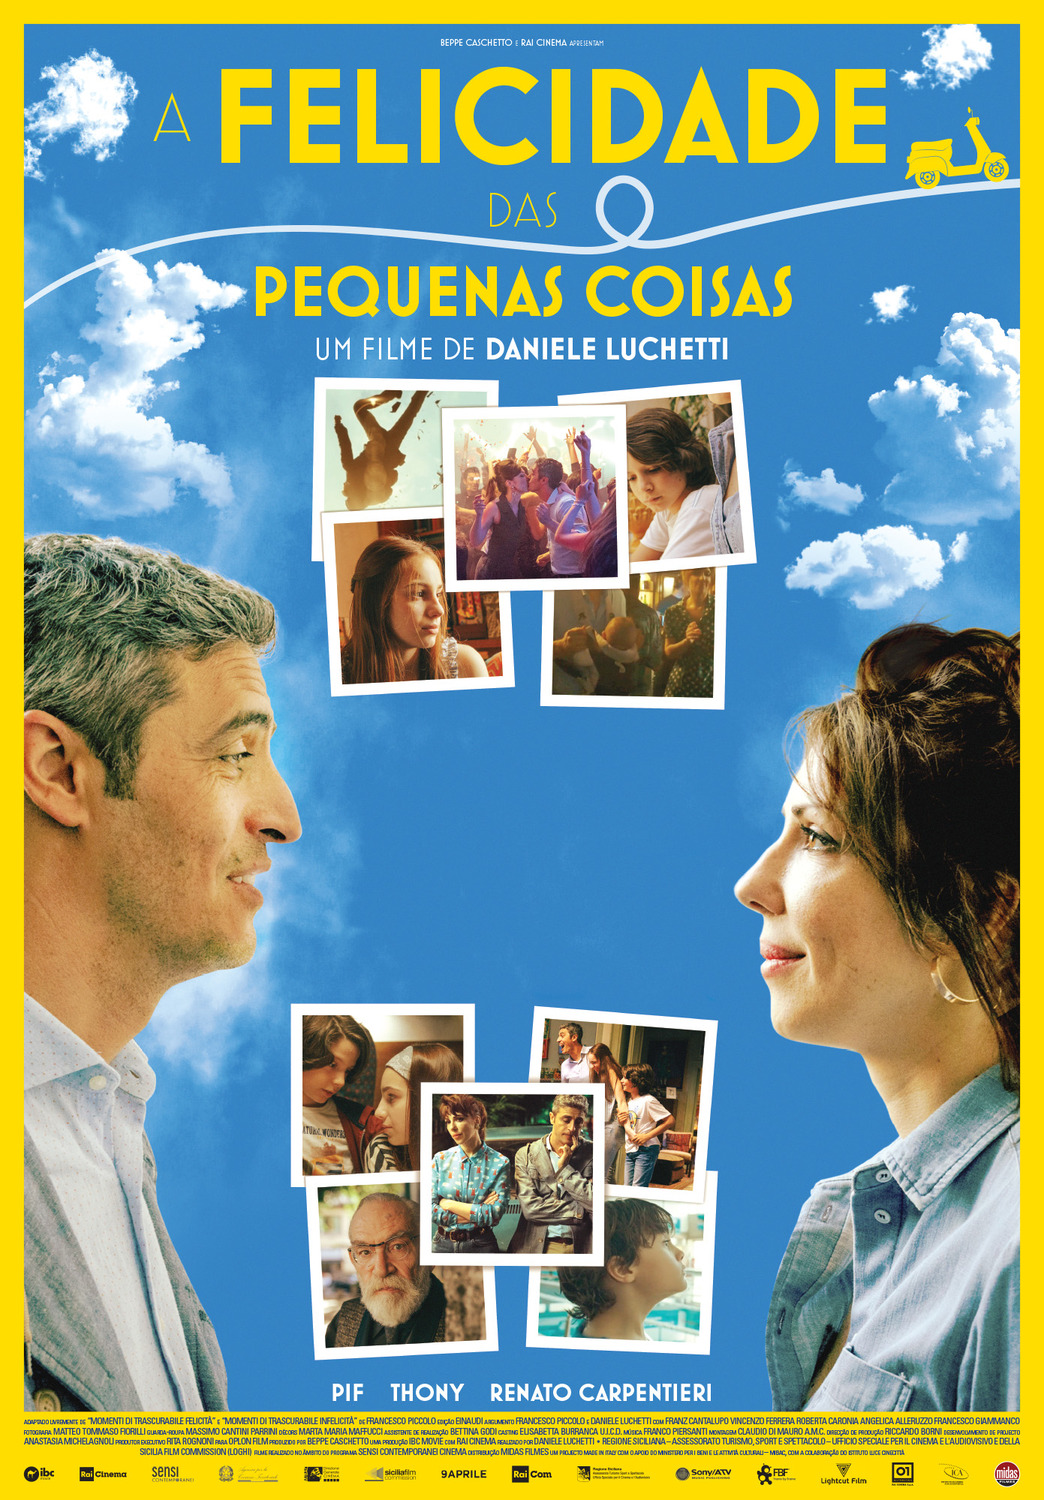 Extra Large Movie Poster Image for Momenti di Trascurabile Felicità (#2 of 2)